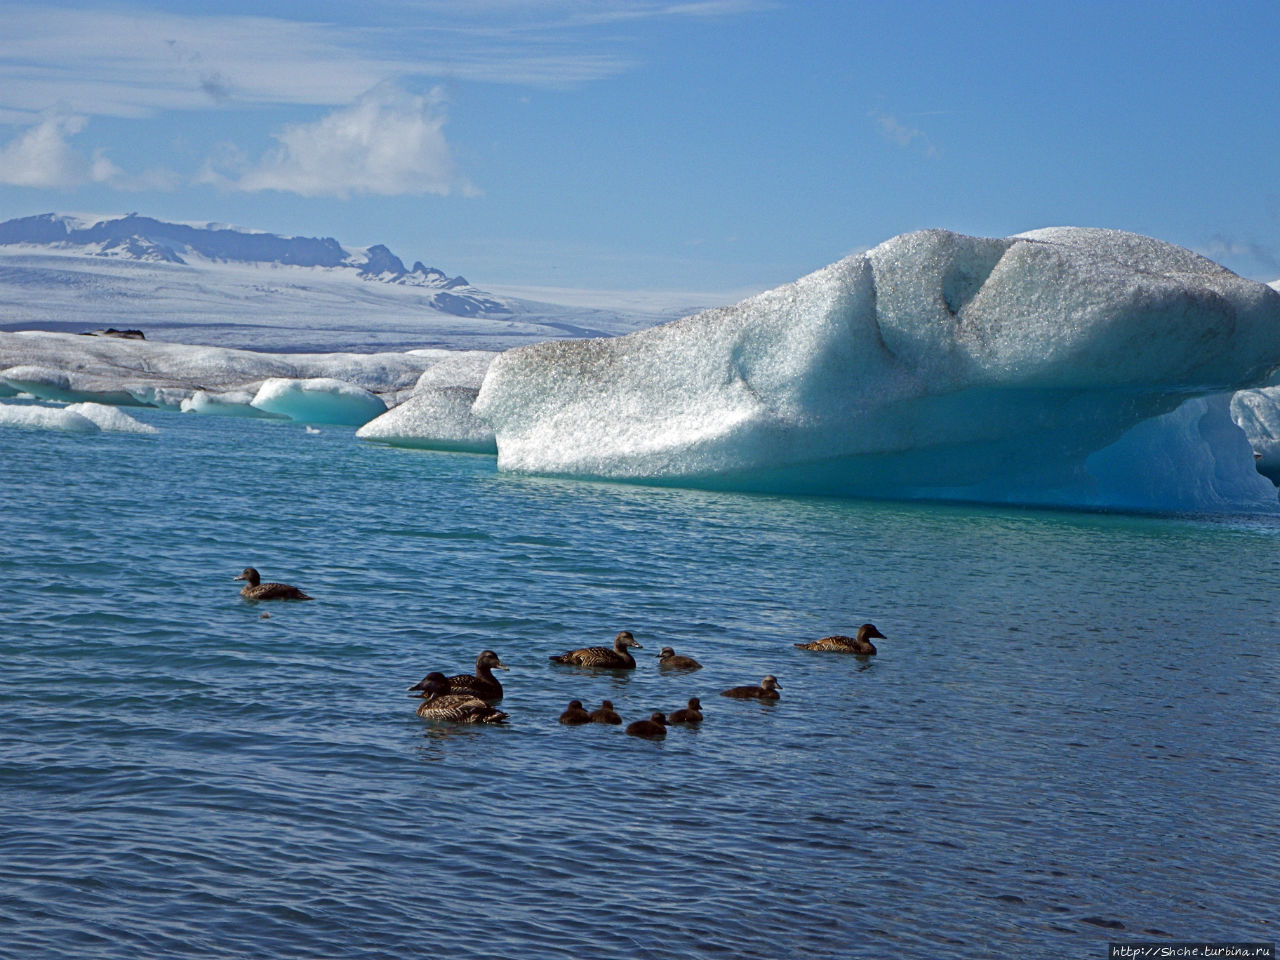 Йекюльсаурлон — исландская Антарктида в миниатюре Йёкюльсаурлоун ледниковая лагуна, Исландия